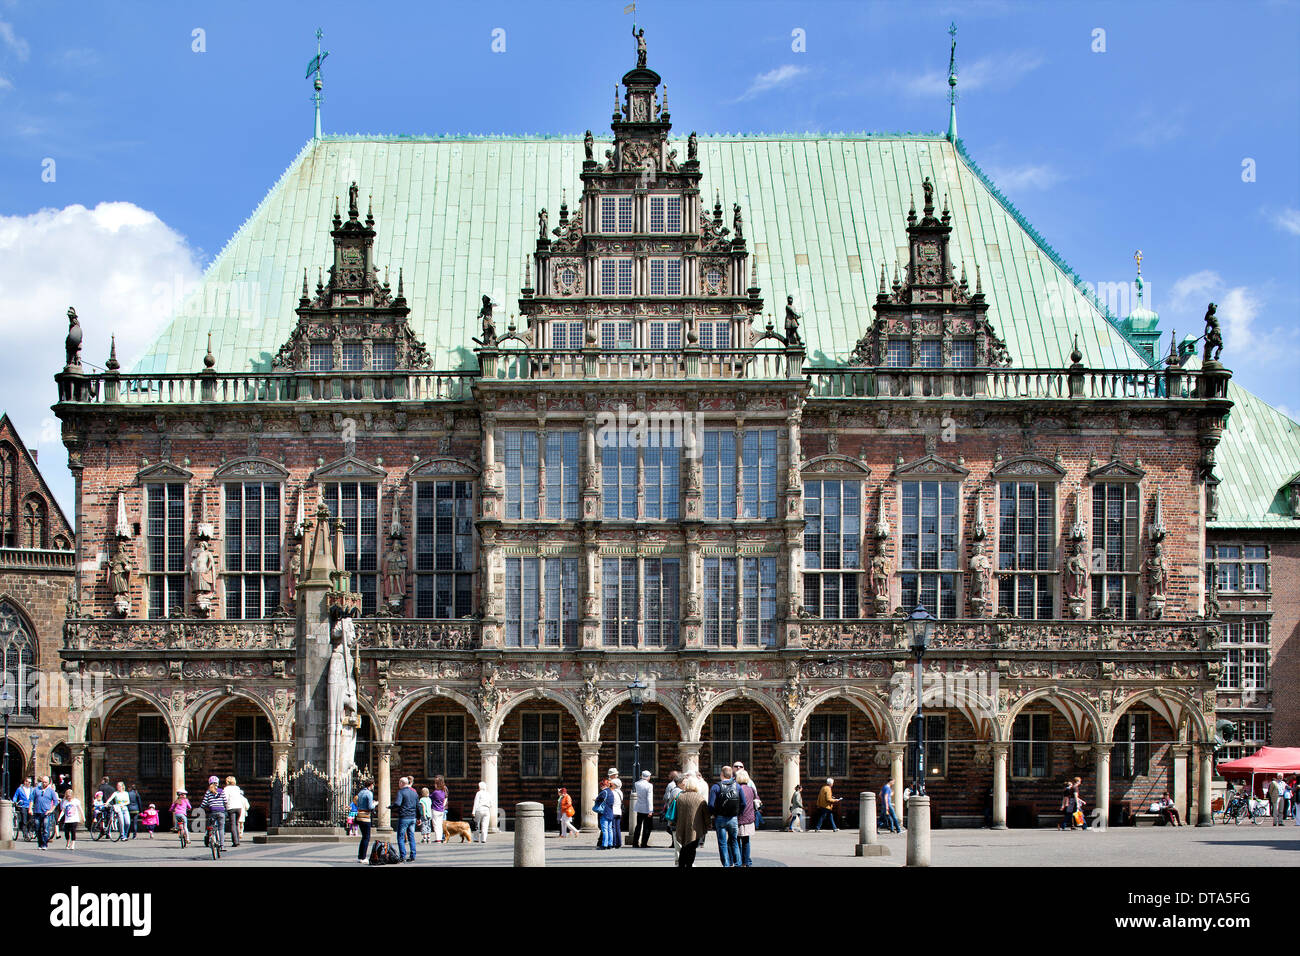 Hôtel de ville de Brême, Weser-renaissance, Site du patrimoine culturel mondial de l'UNESCO, Brême, Allemagne Banque D'Images